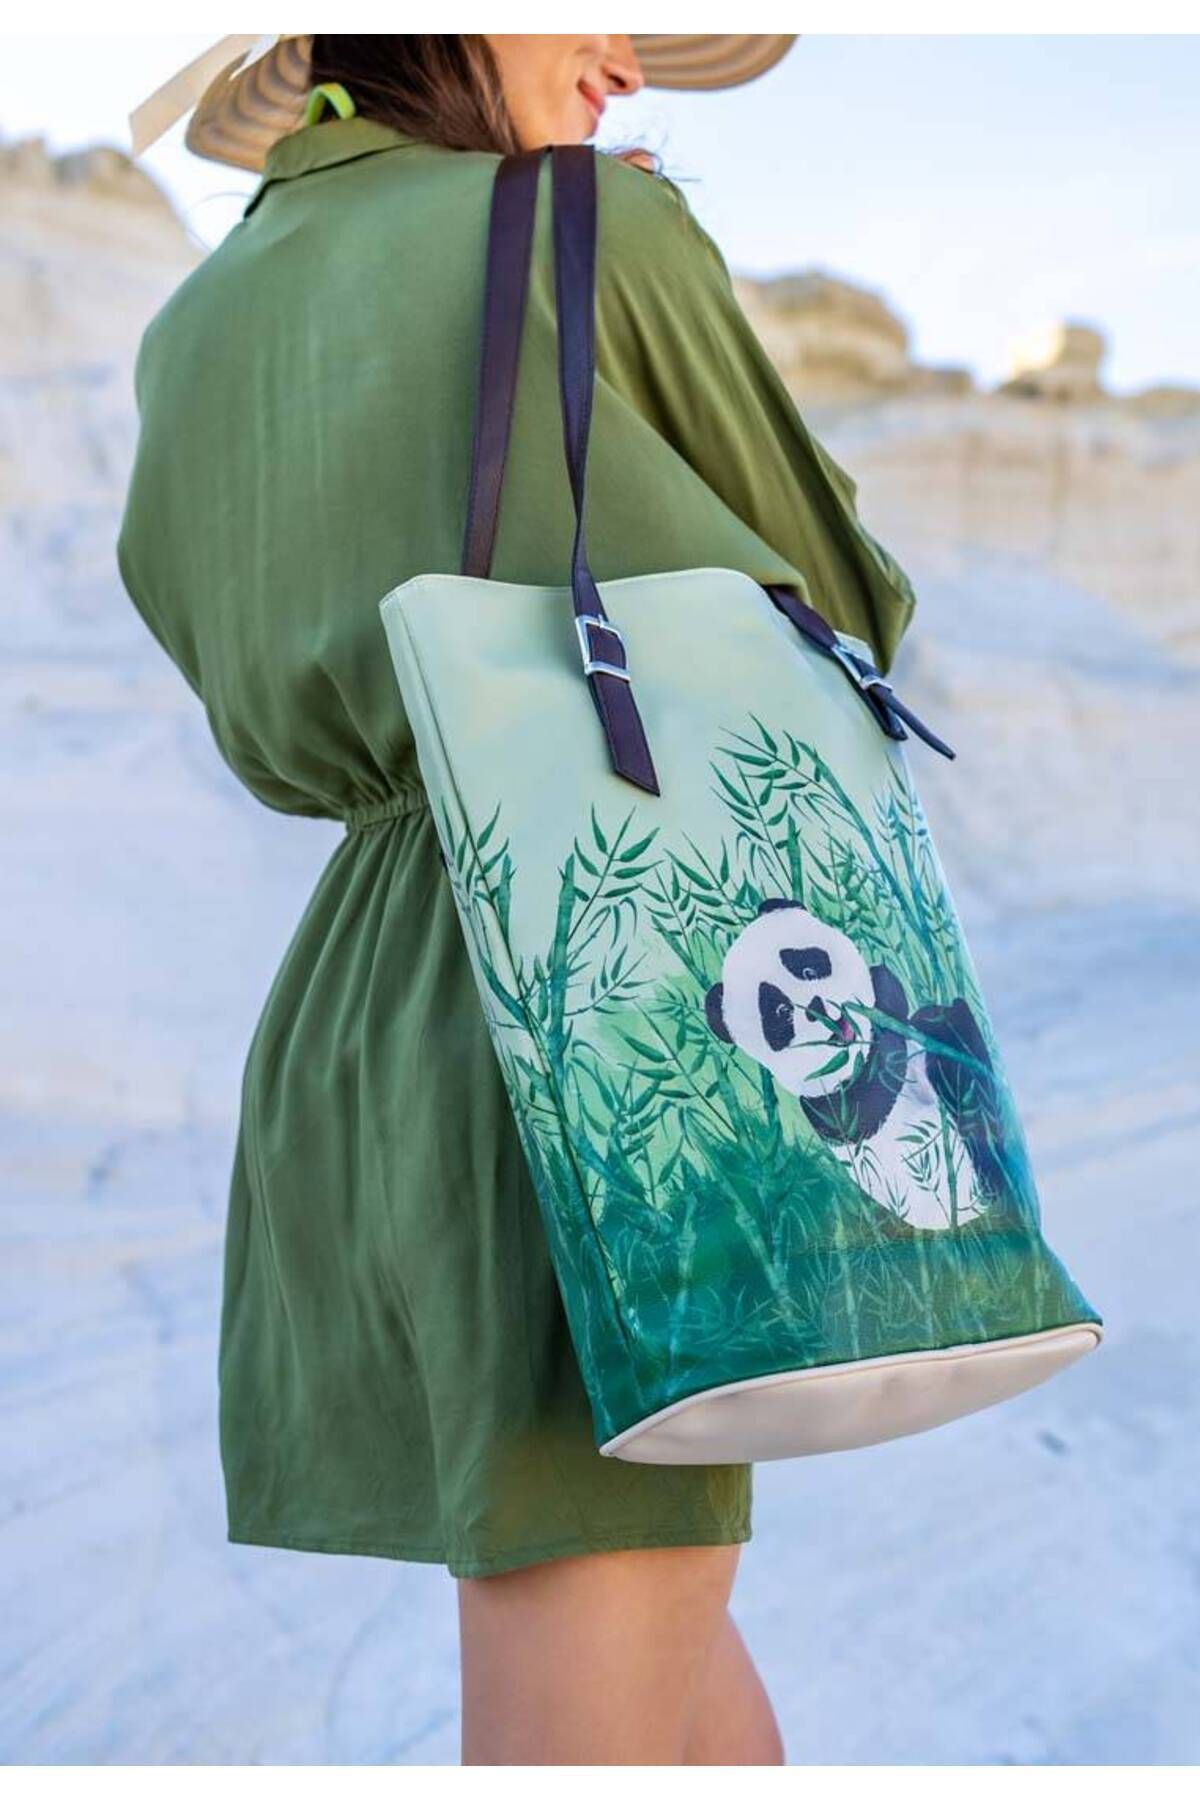 Dogo Kadın Vegan Deri Yeşil Omuz Çantası - Bamboo Lover Tasarım